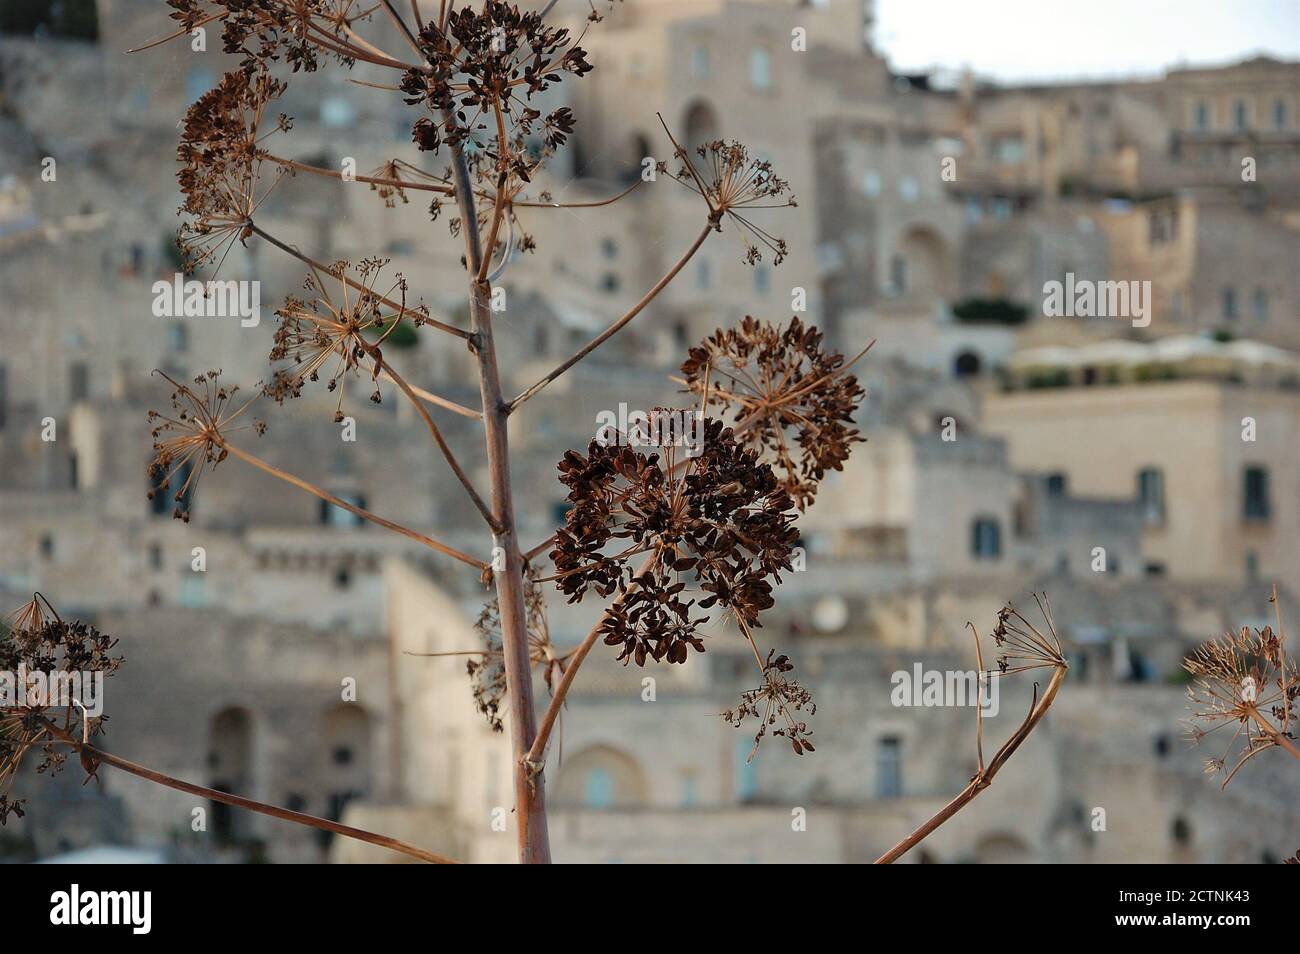 Título emocional del sitio de la UNESCO Sassi de Matera paisaje urbano y flores silvestres de color marrón seco en primer plano Foto de stock